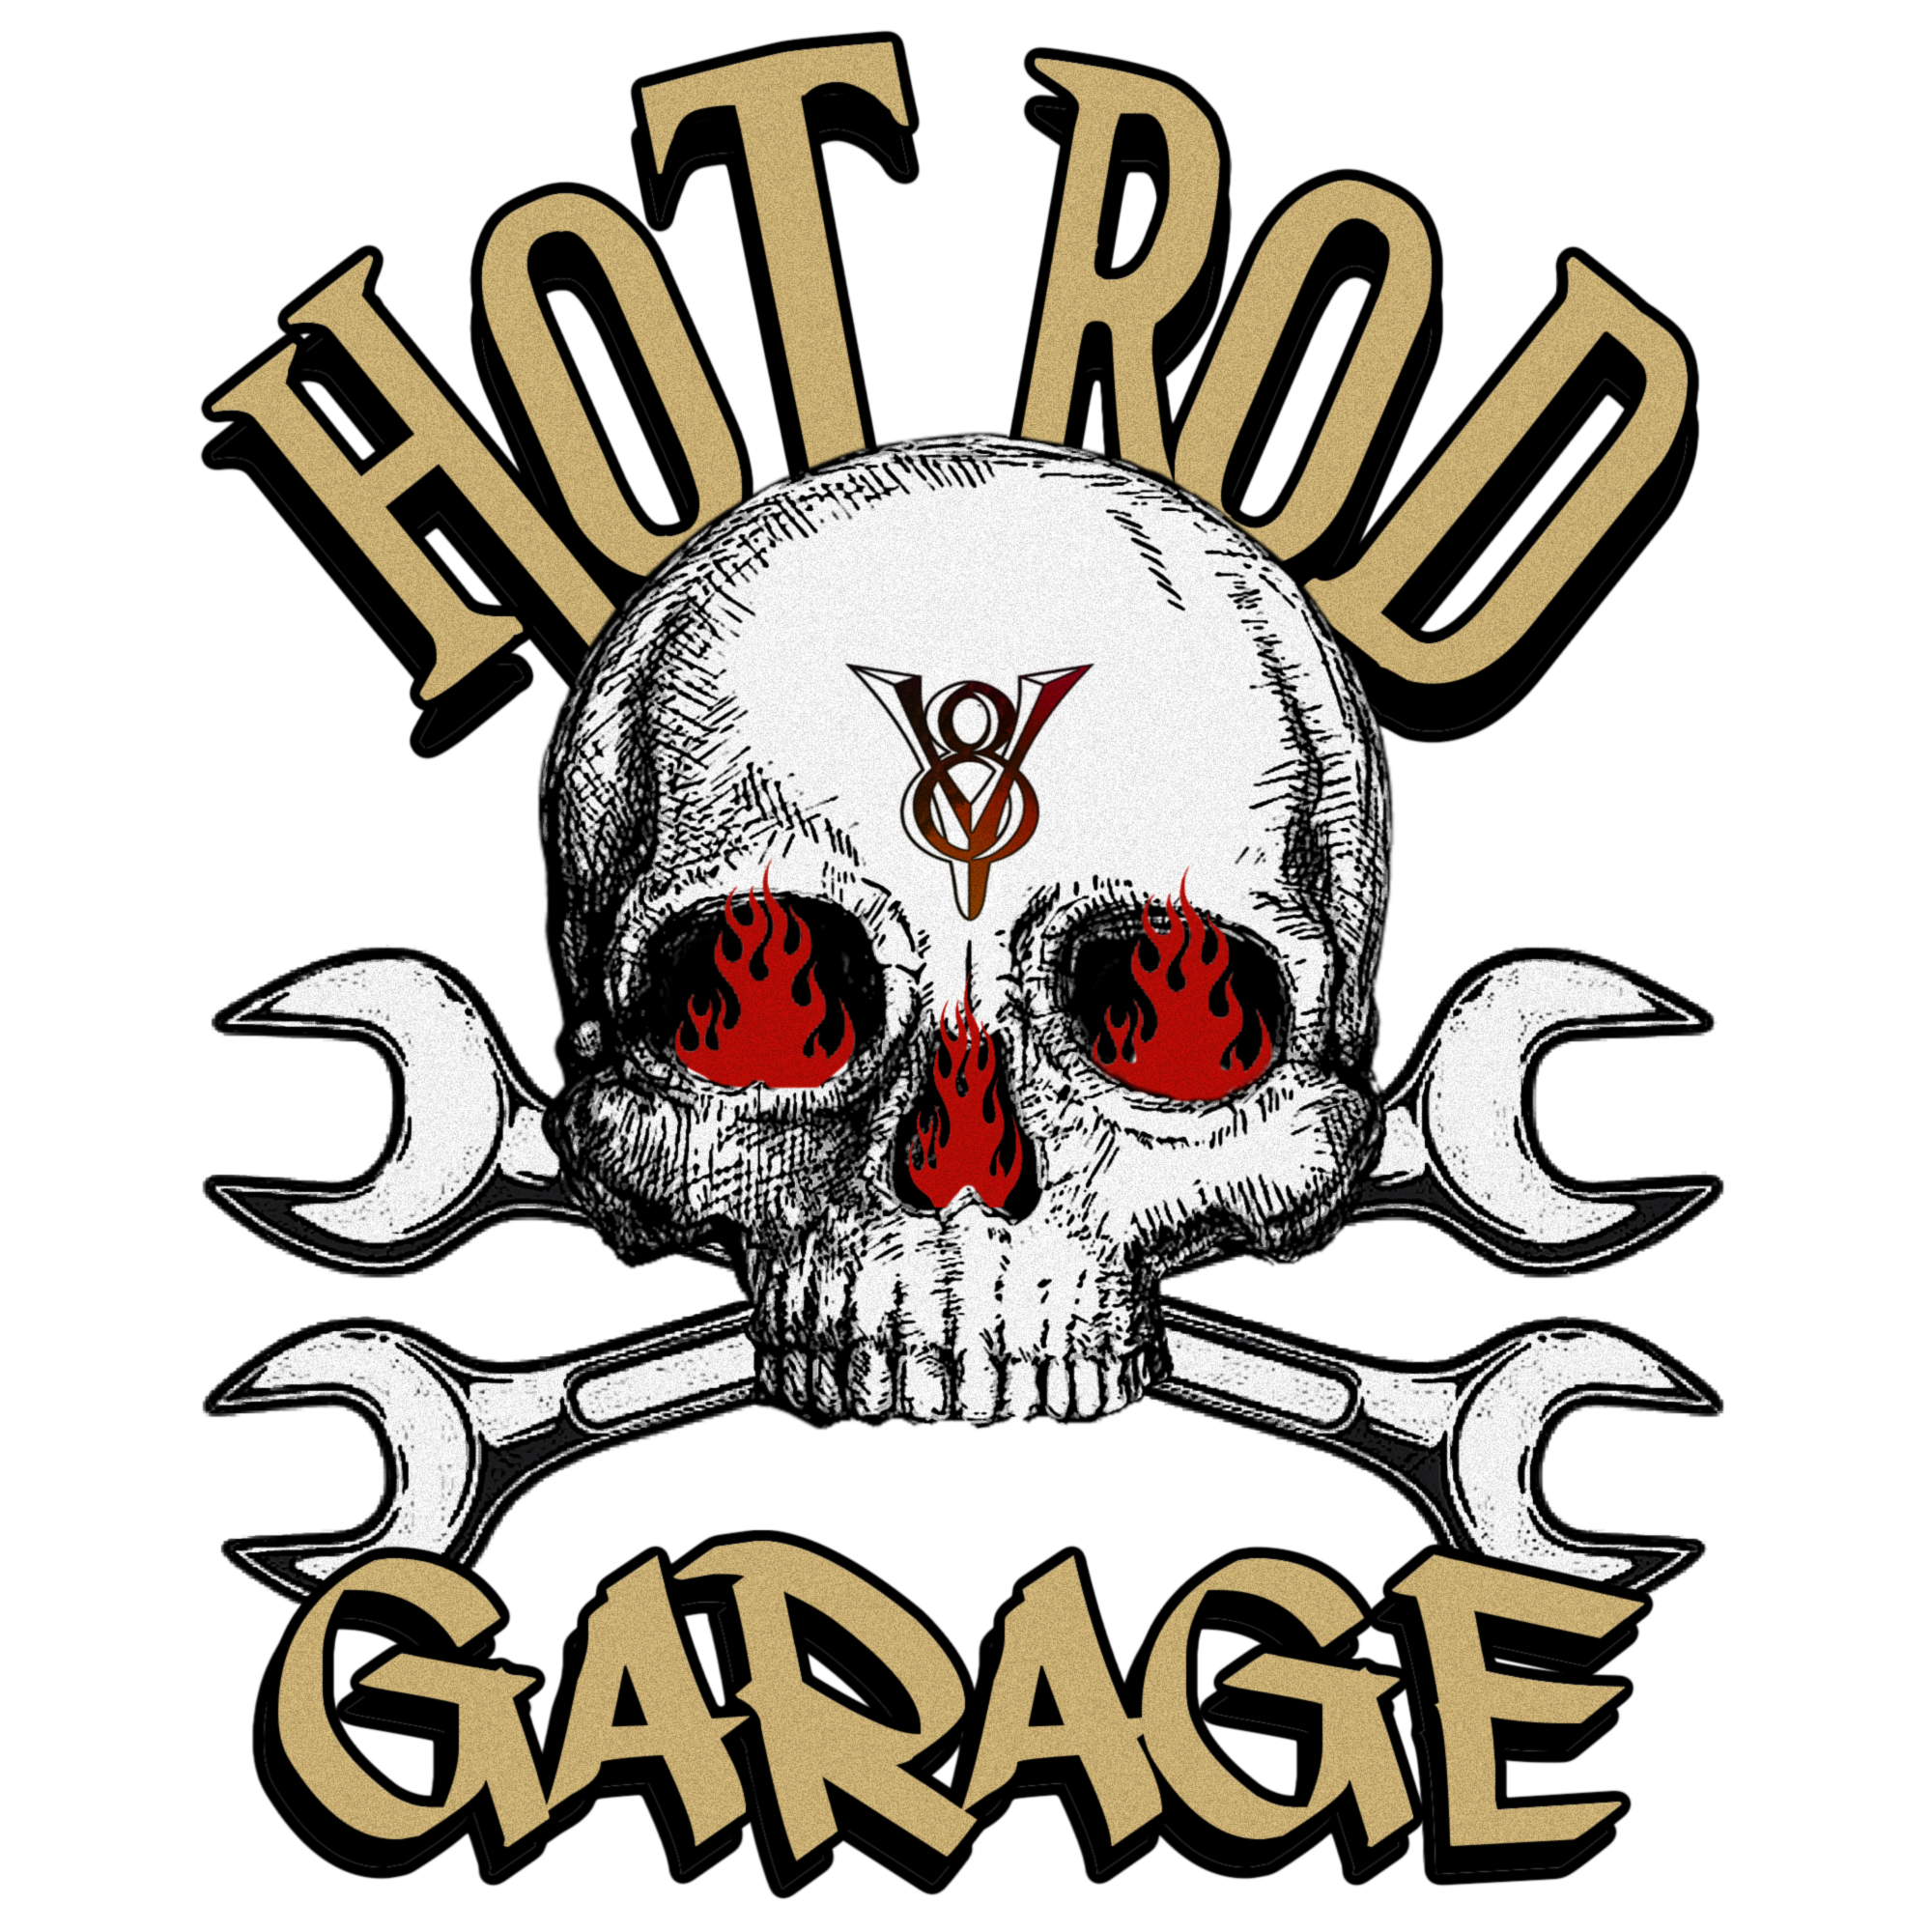 Hot Rod Garage- Skull V8 - Image